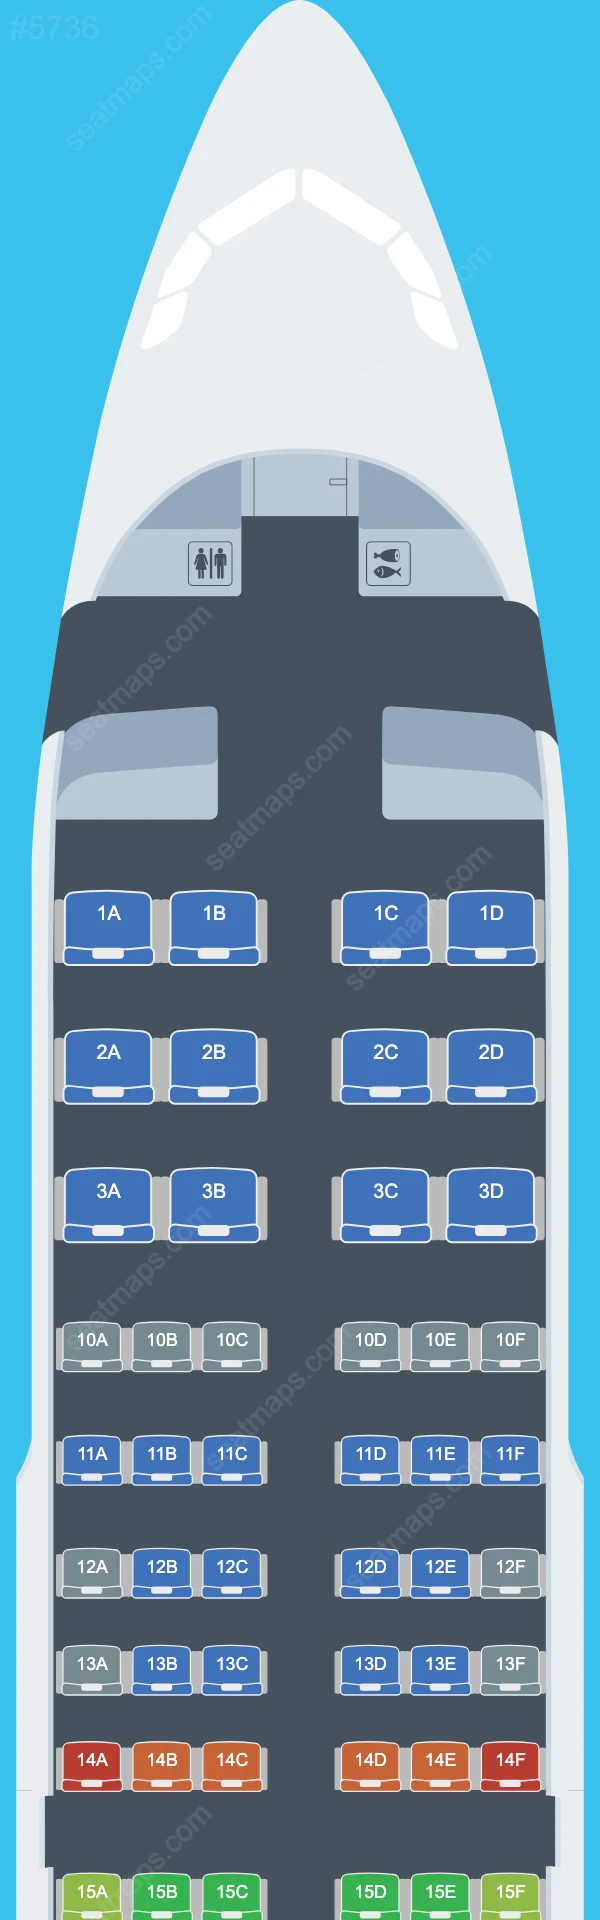 Delta Airbus A319 シートマップ A319-100 V.2